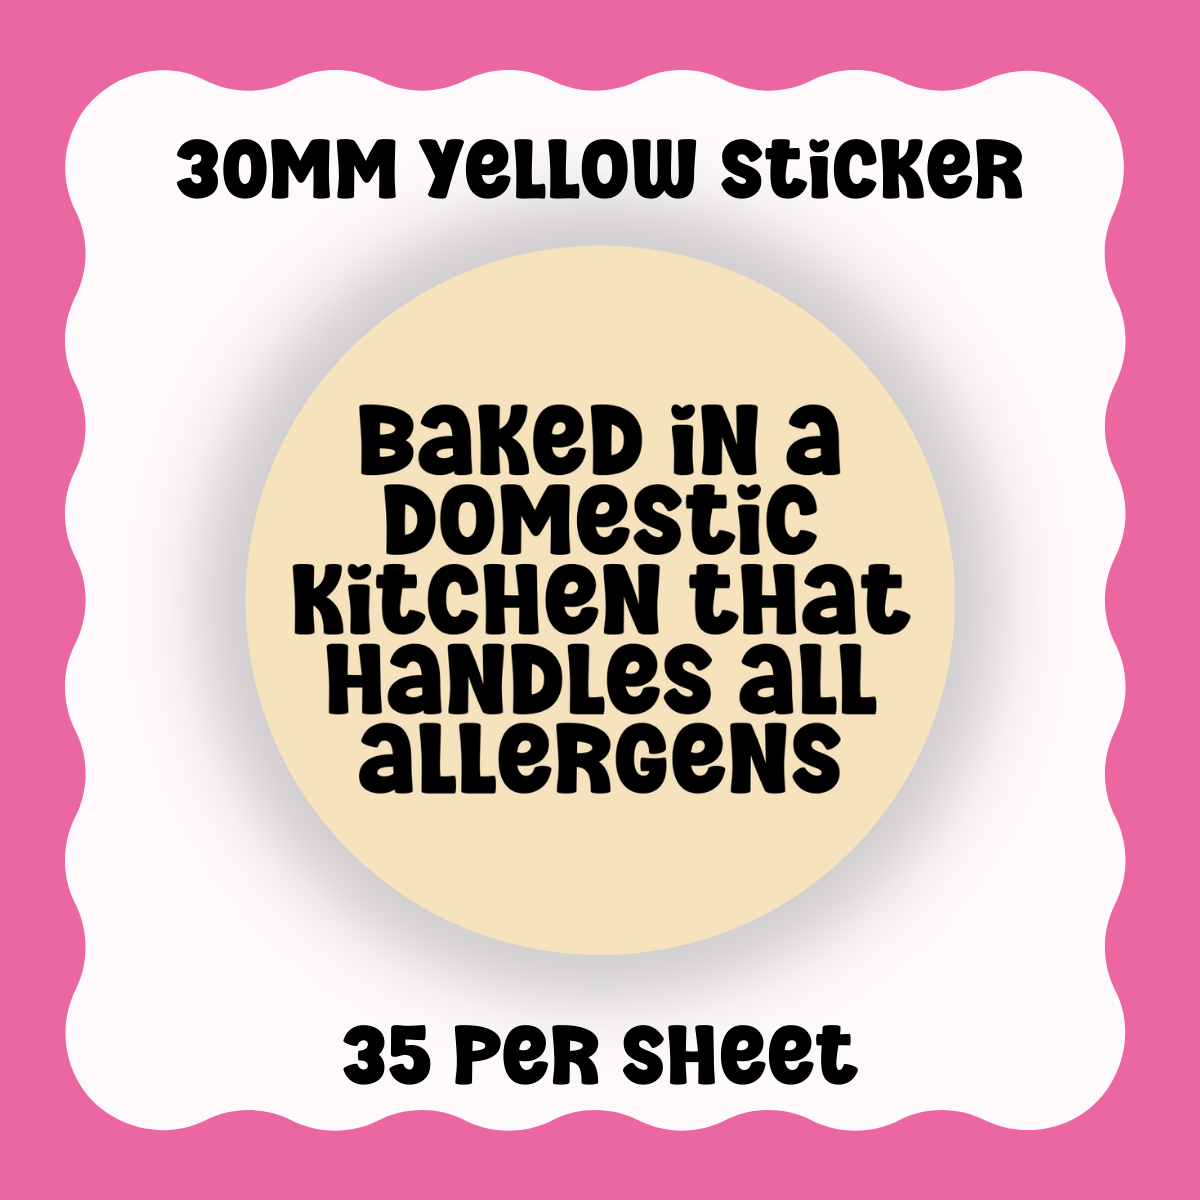 Allergen Disclaimer - Domestic Kitchen